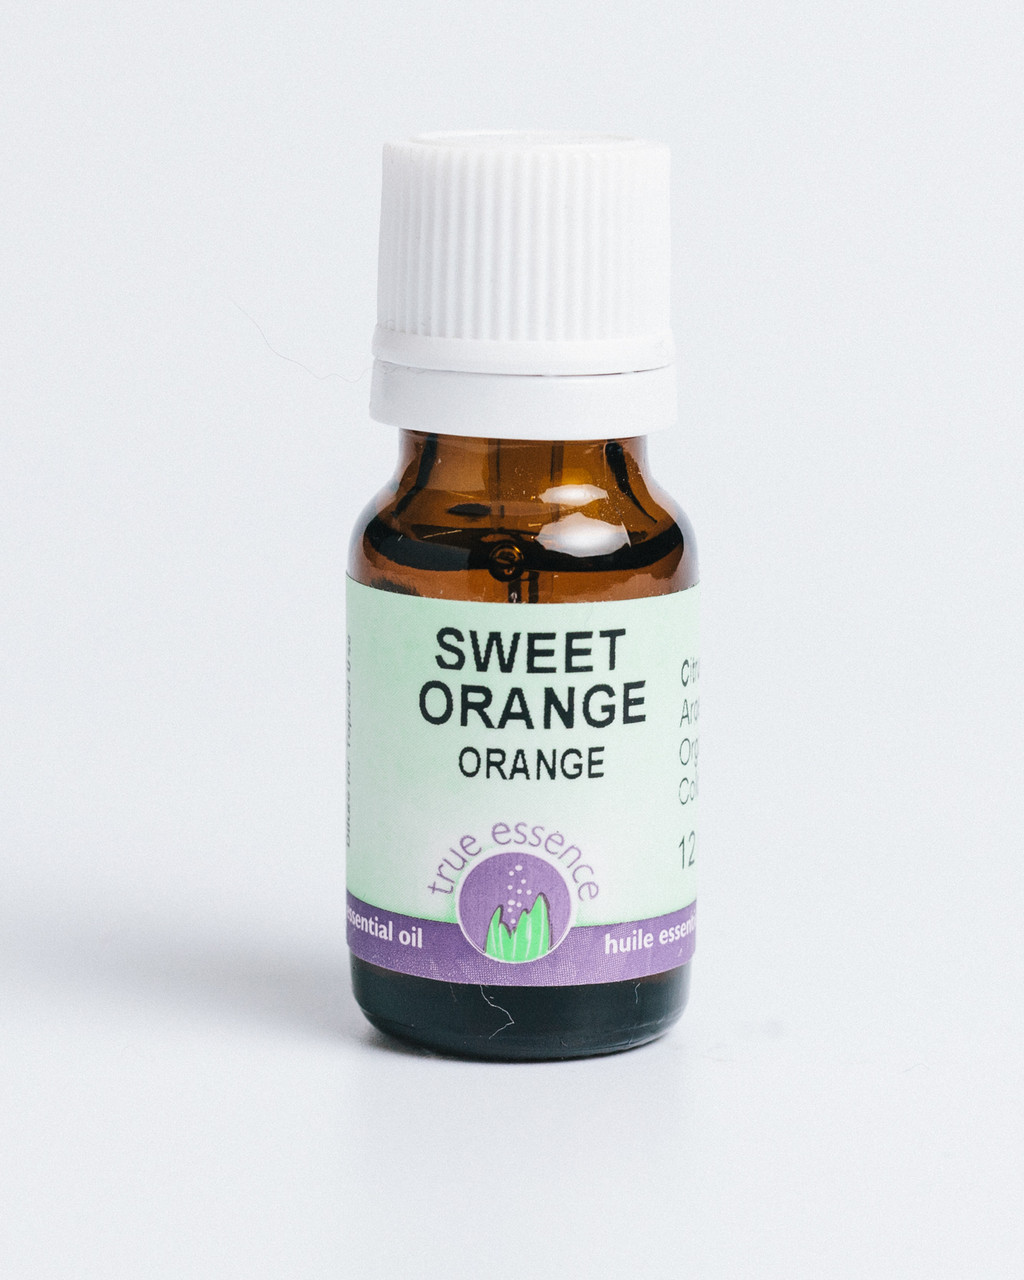 ORANGE SWEET (Citrus sinensis) Organic